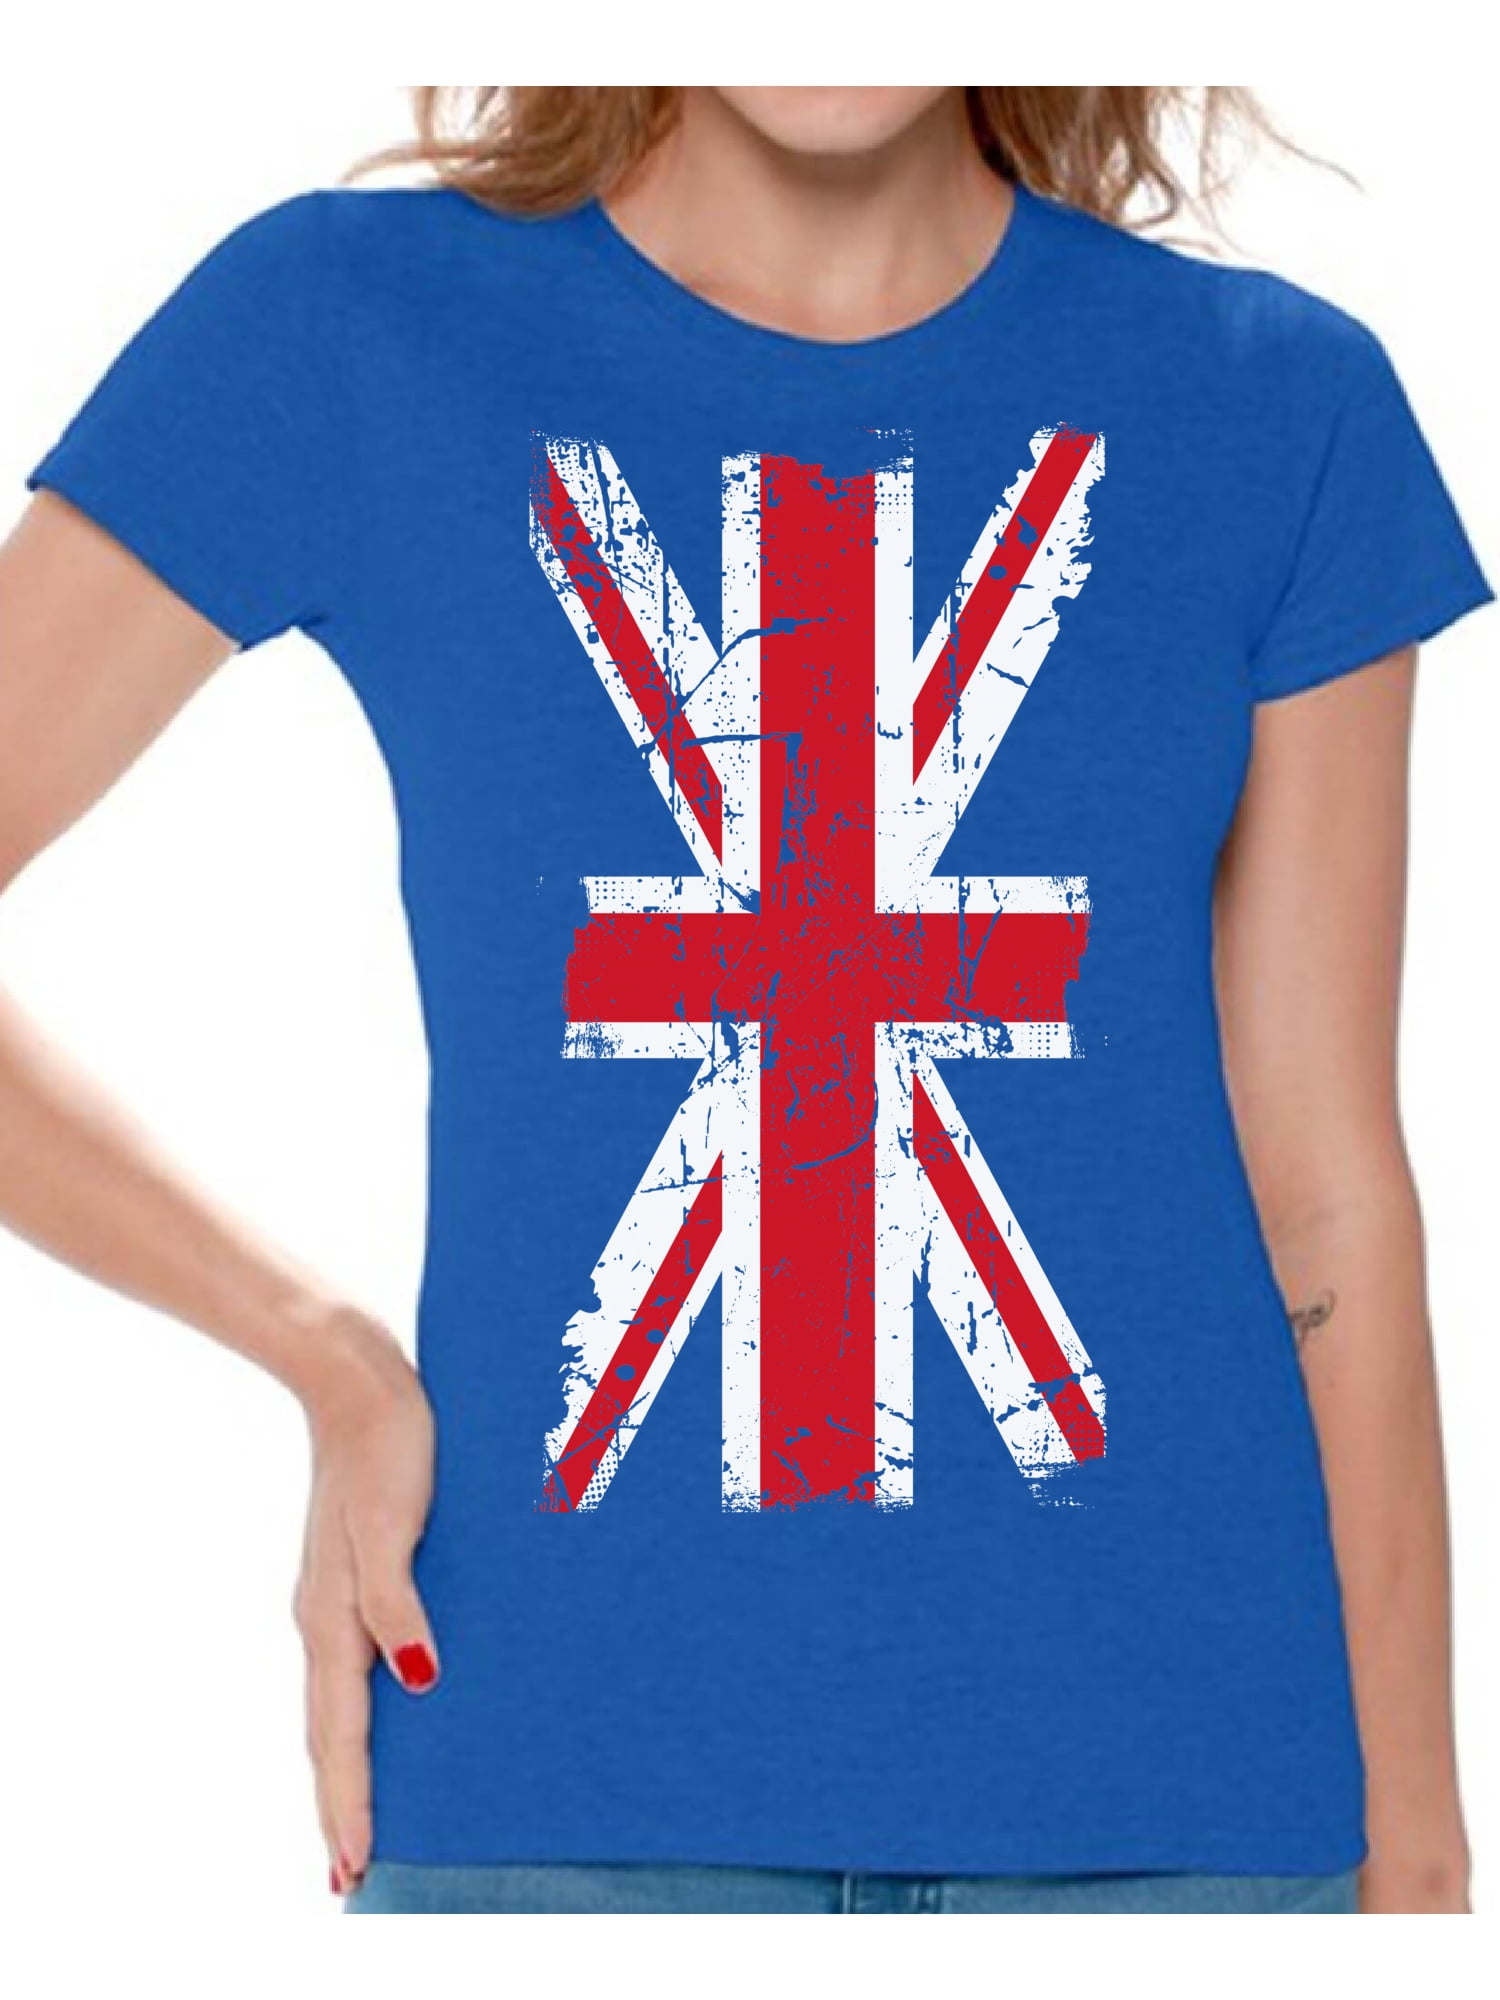 Awkward Styles English Shirt Union Jack T-shirt New England British Ladies T Union Jack Shirt Women Shirt UK T Shirt Shirt for Ladies T Shirt Clothing United Kingdom Gifts -